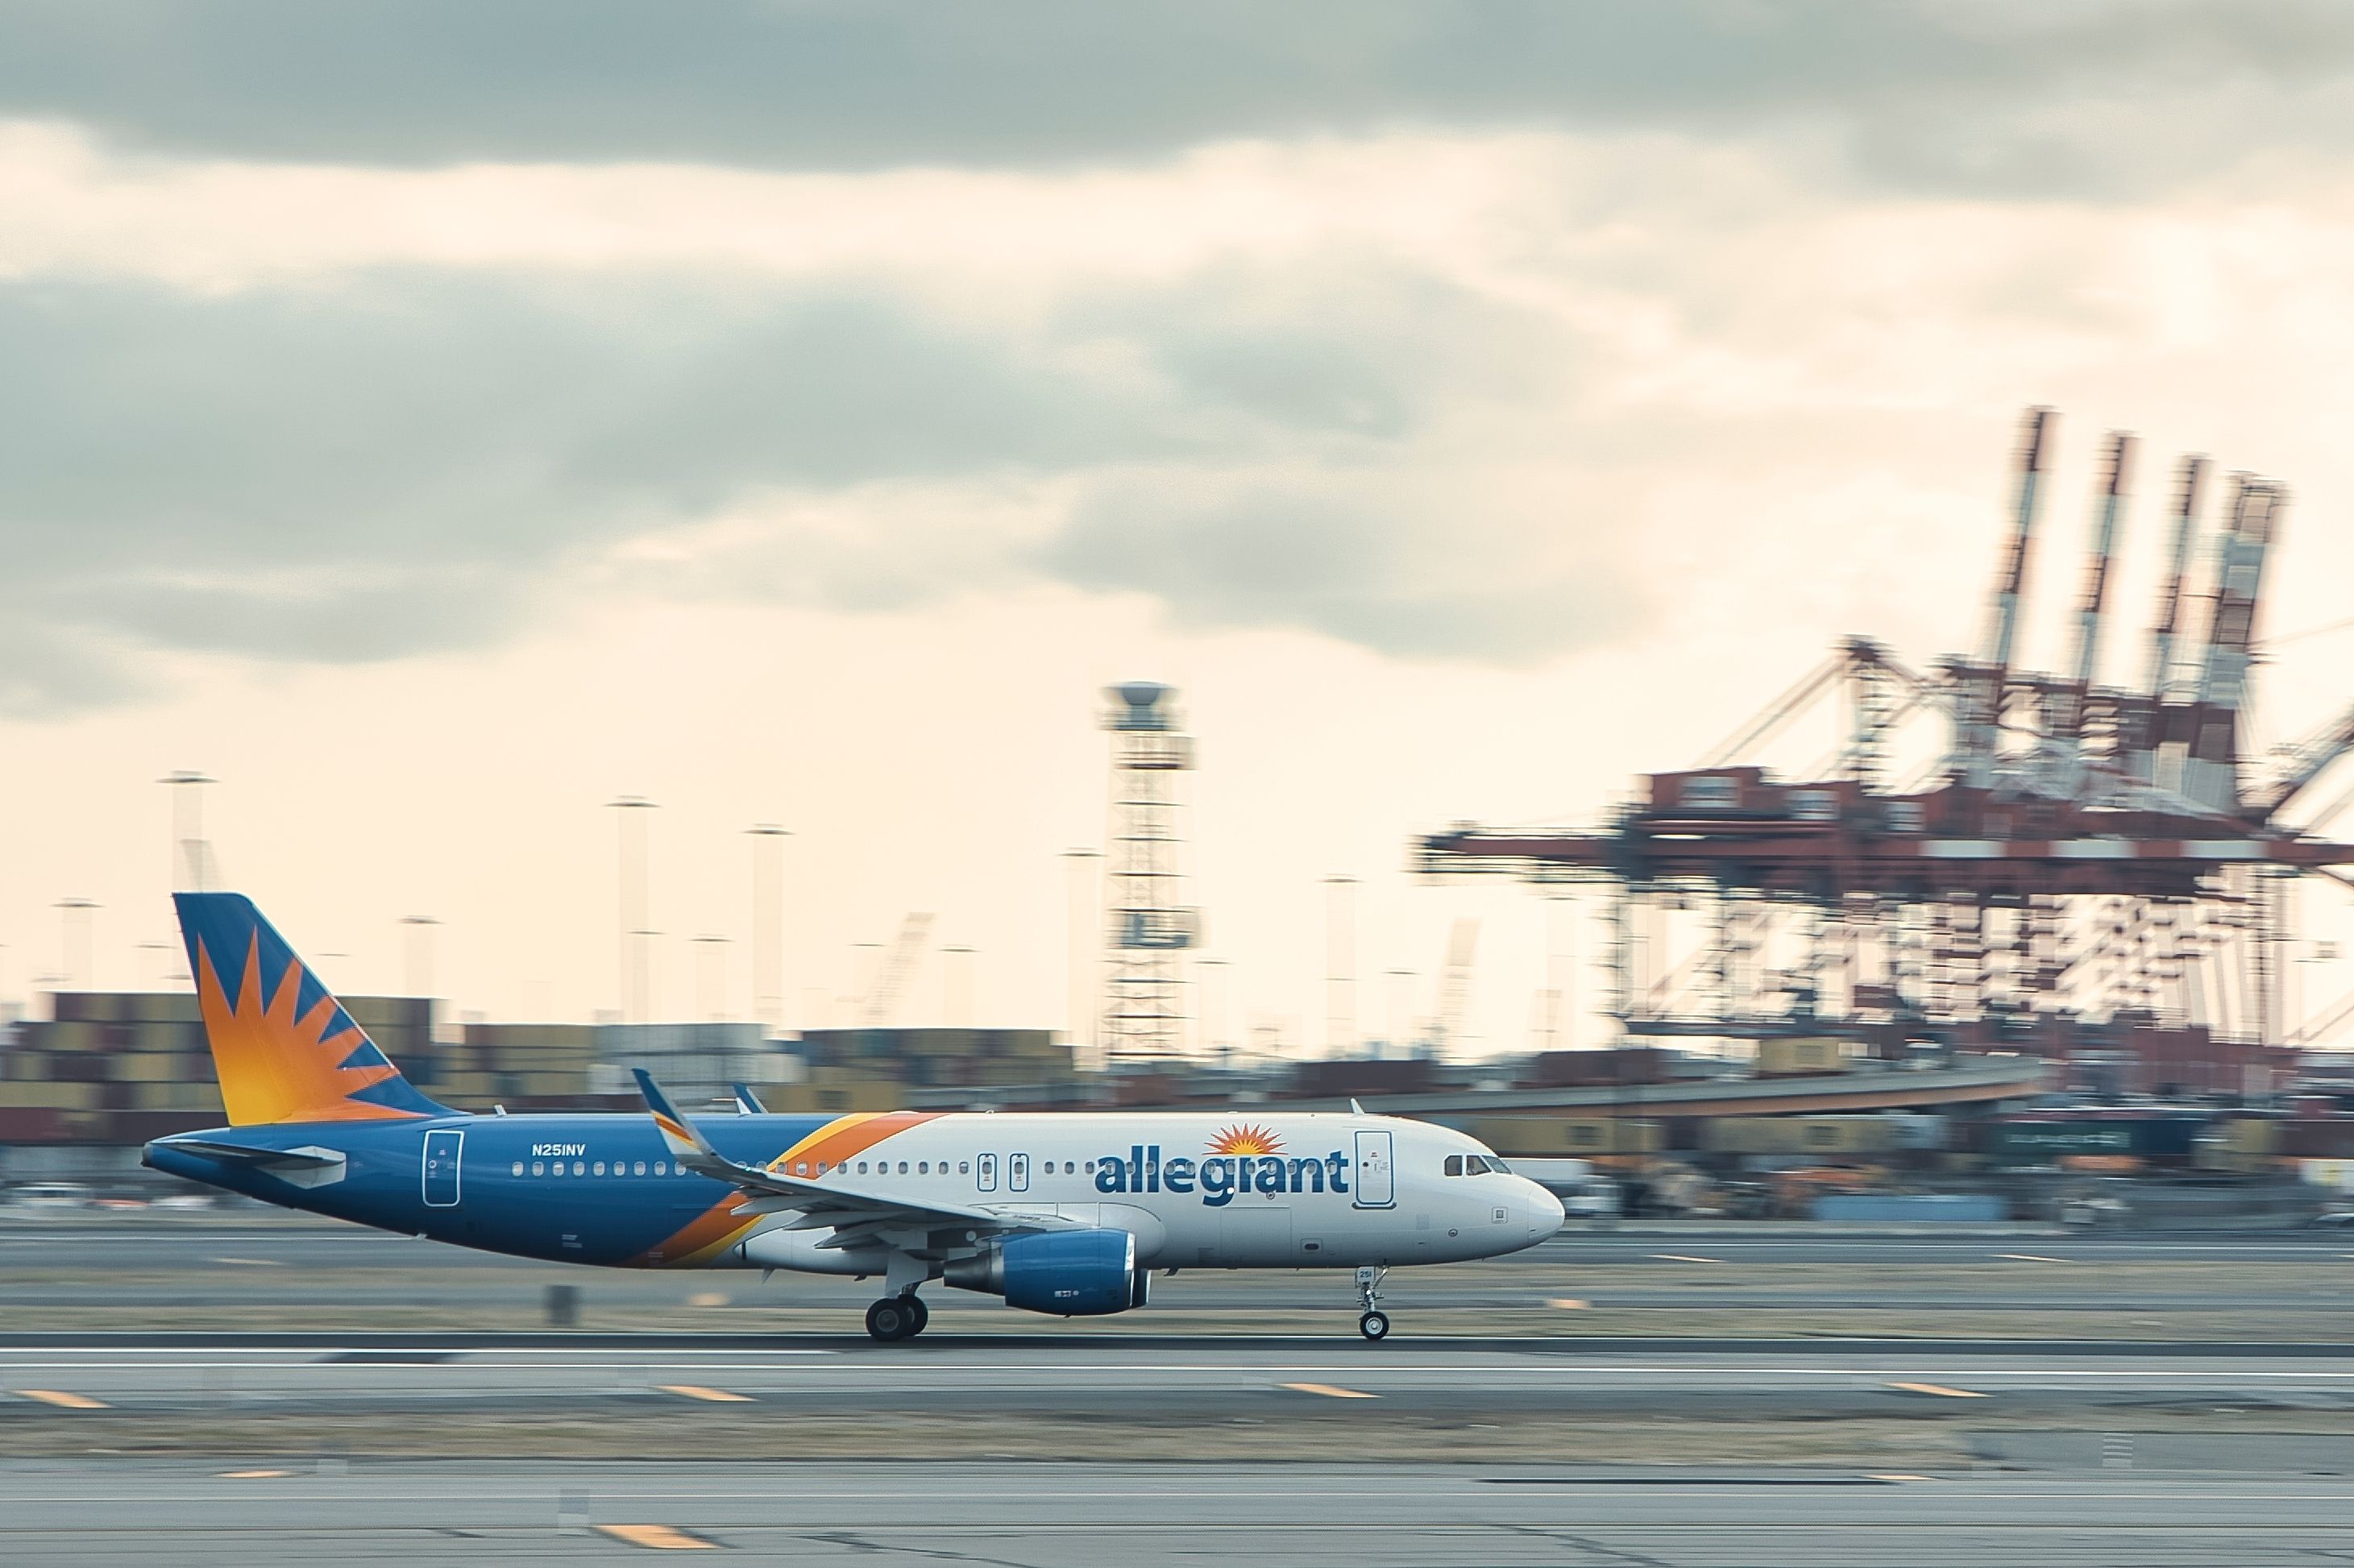 An Allegiant aircraft departing from Newark 